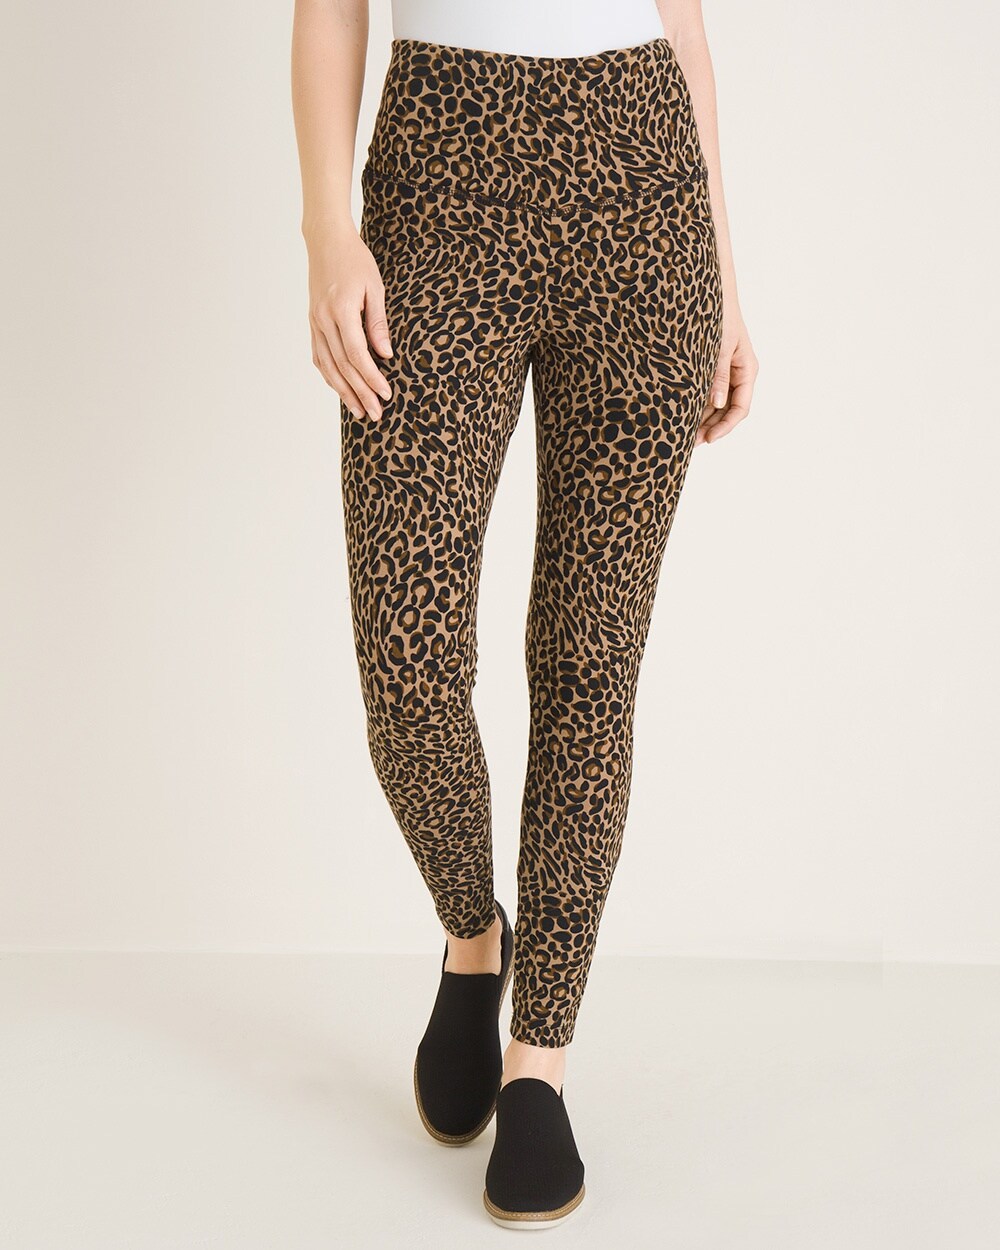 Zenergy So Slimming Cheetah-Print Leggings